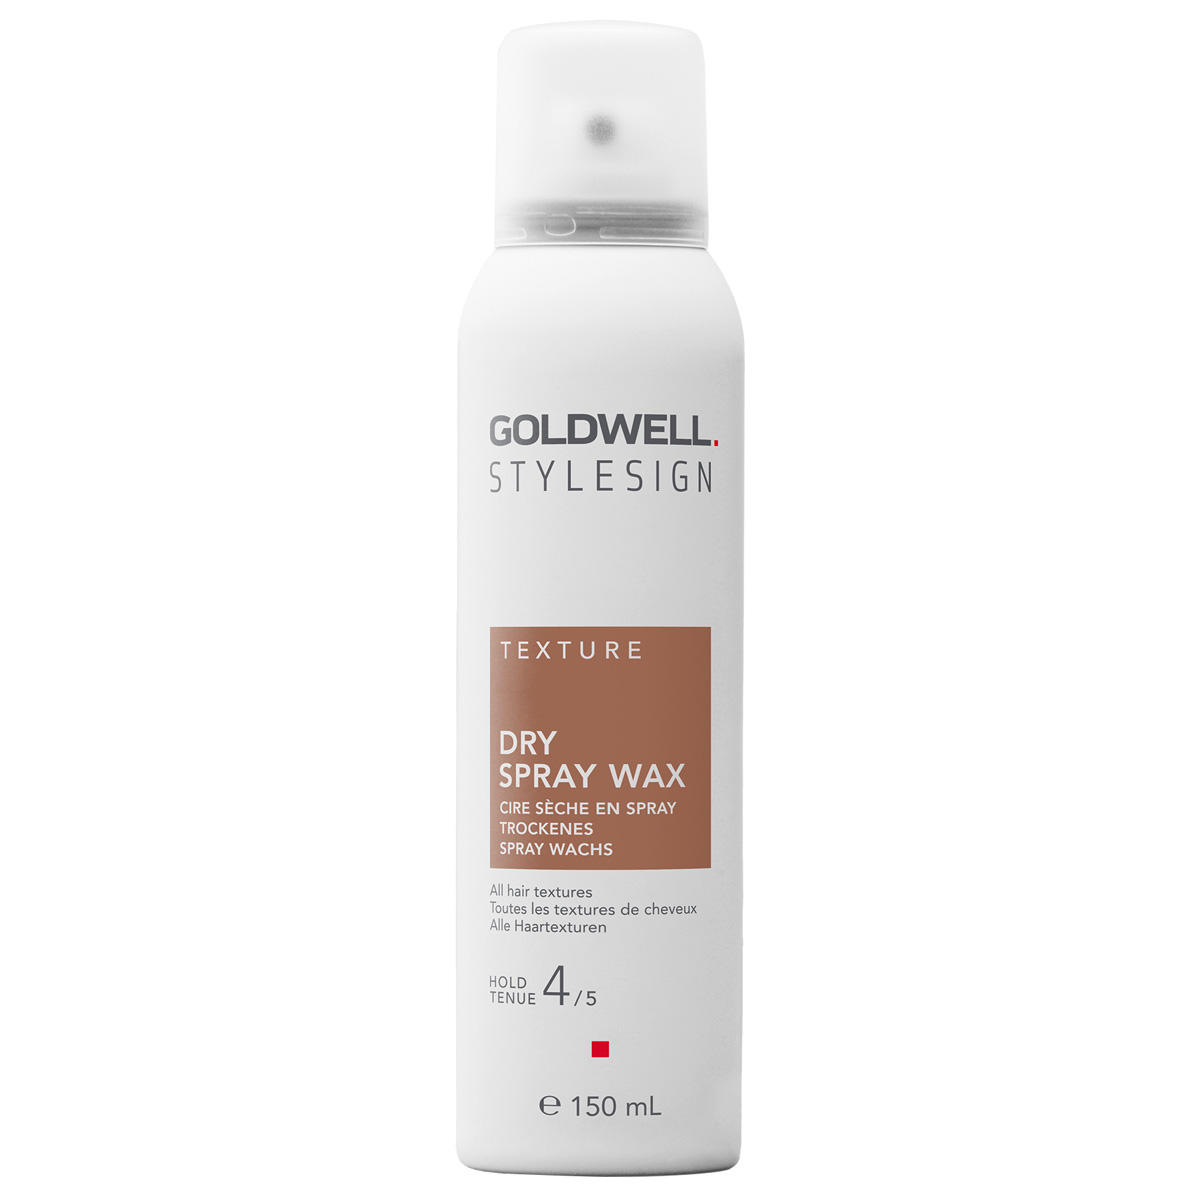 Goldwell StyleSign Texture Cire sèche en spray starker Halt 150 ml - 1